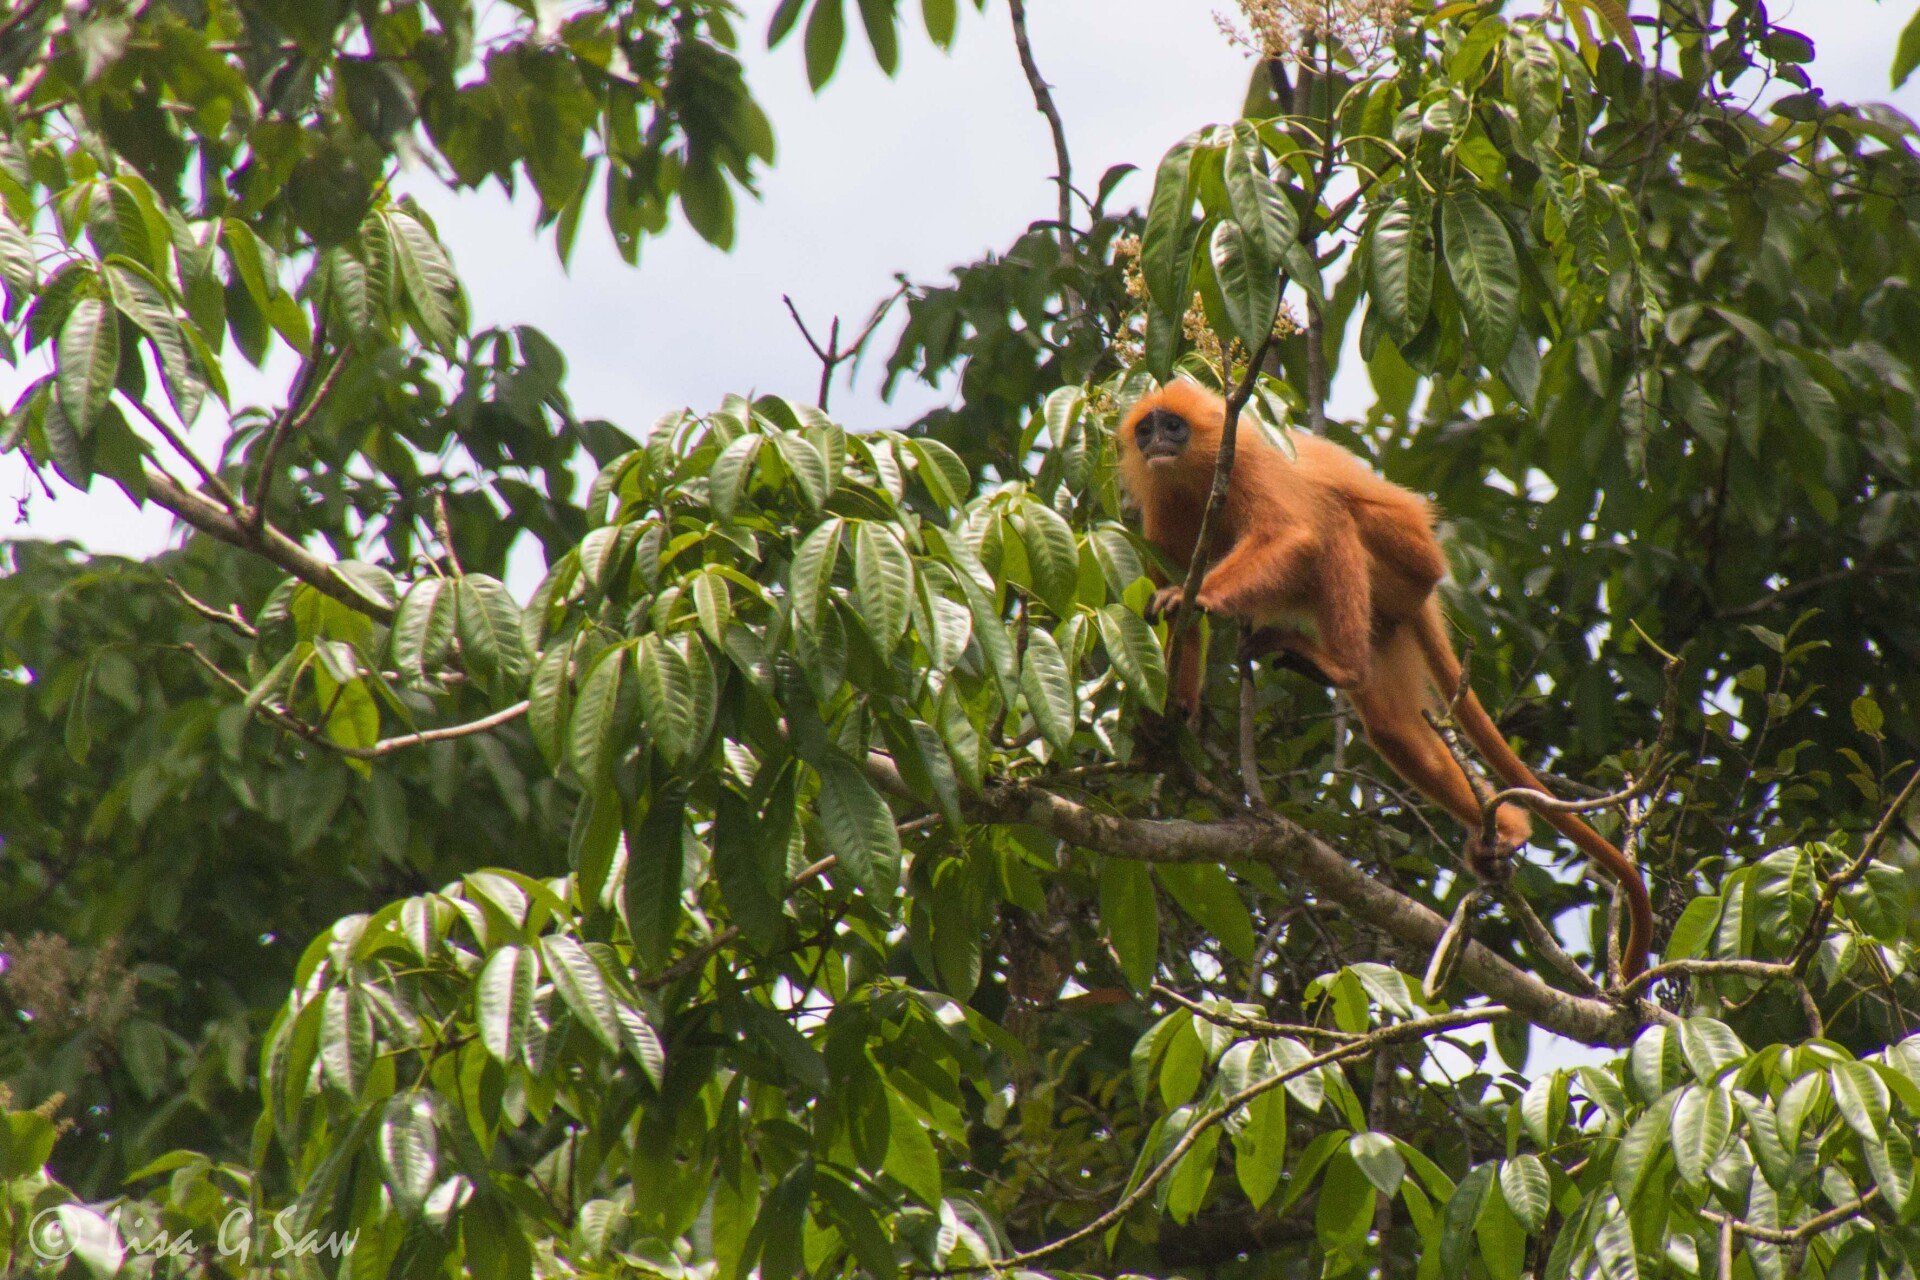 Red Leaf Monkey in tree tops in Danum Valley